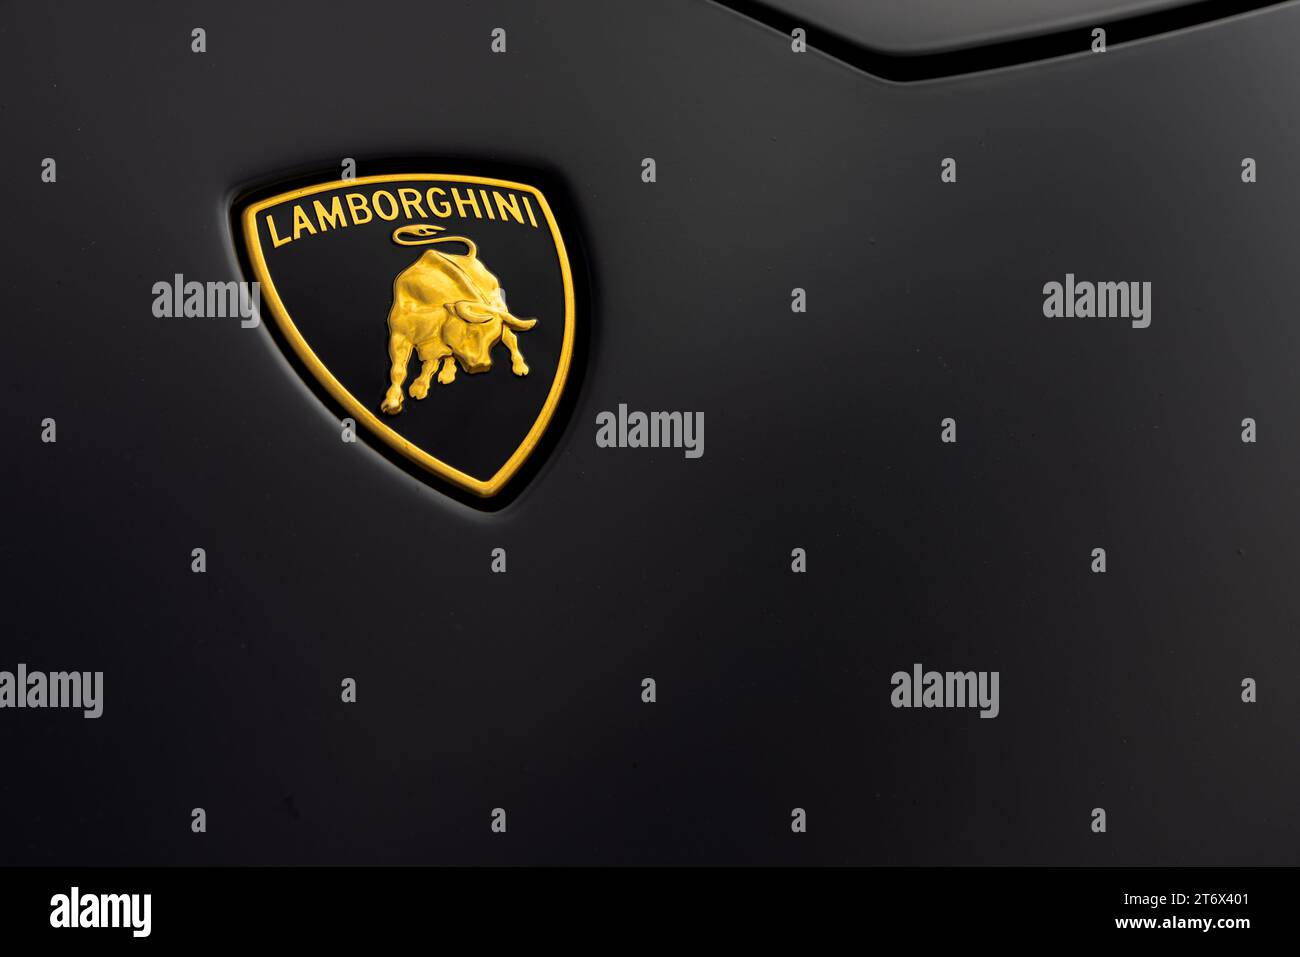 2019 Lamborghini Huracán bonnet badge Stock Photo